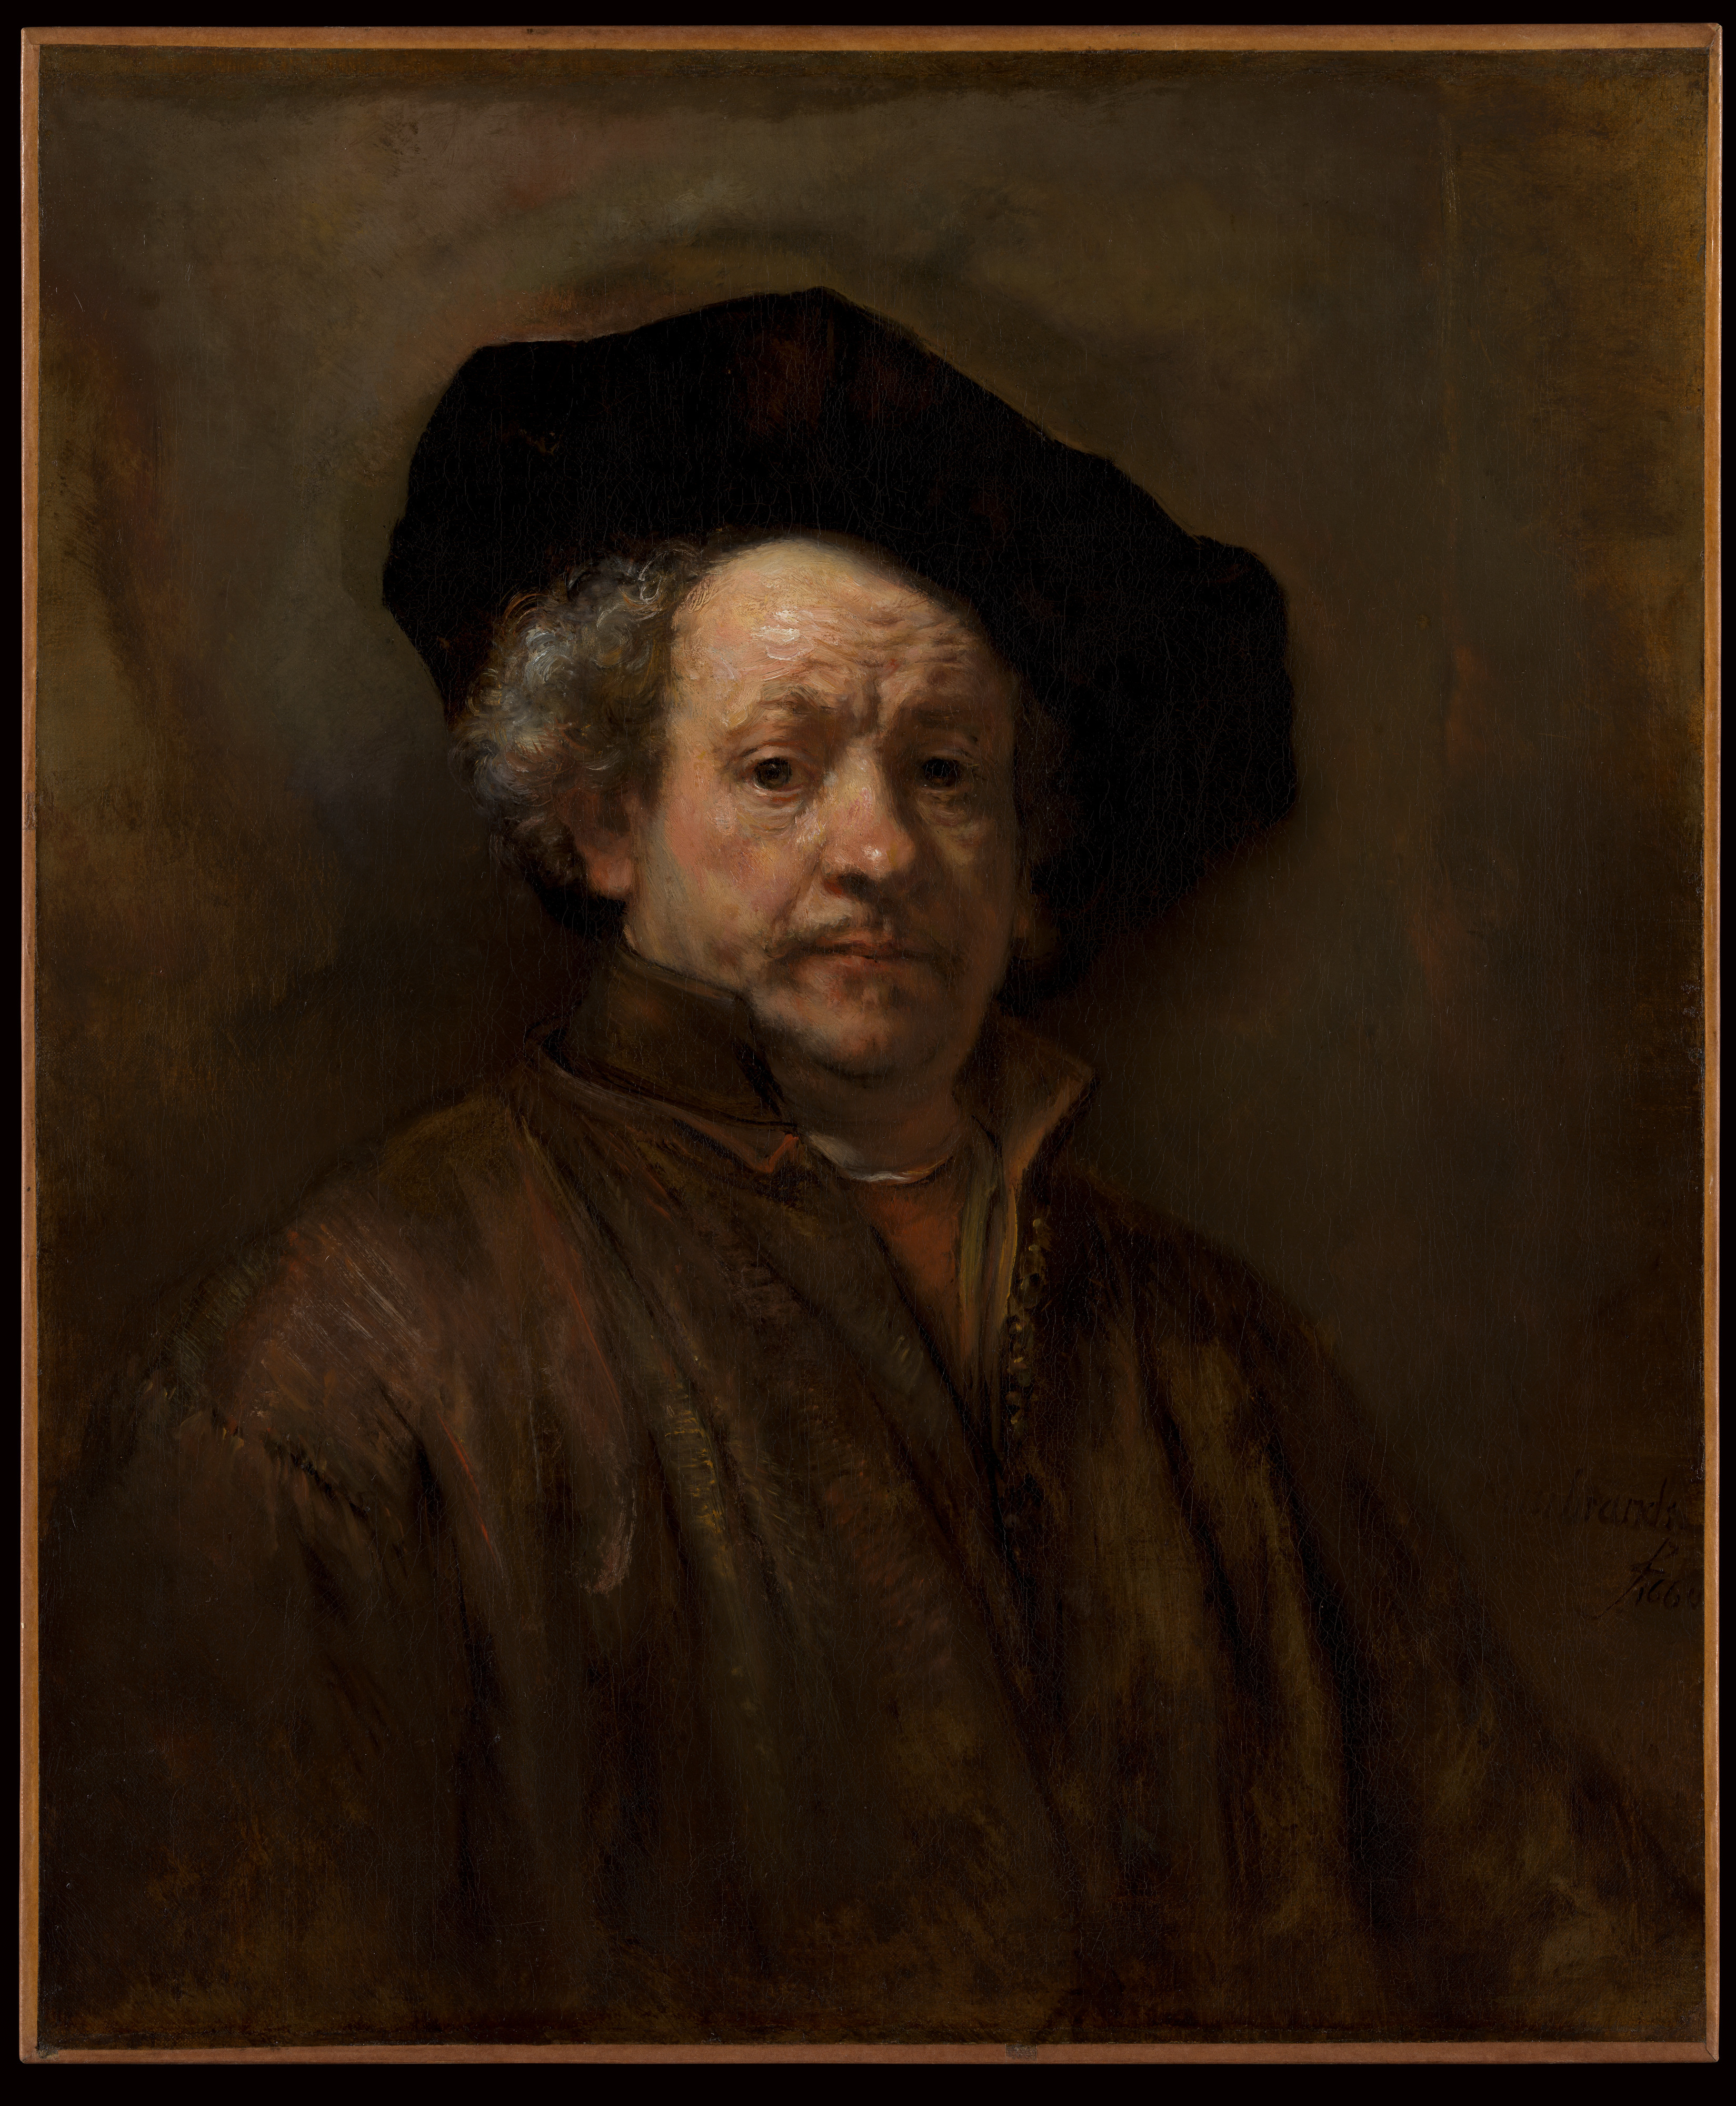 Selbstbildnis by Rembrandt van Rijn - 1660 - 31 5/8 x 26 1/2 in Metropolitan Museum of Art